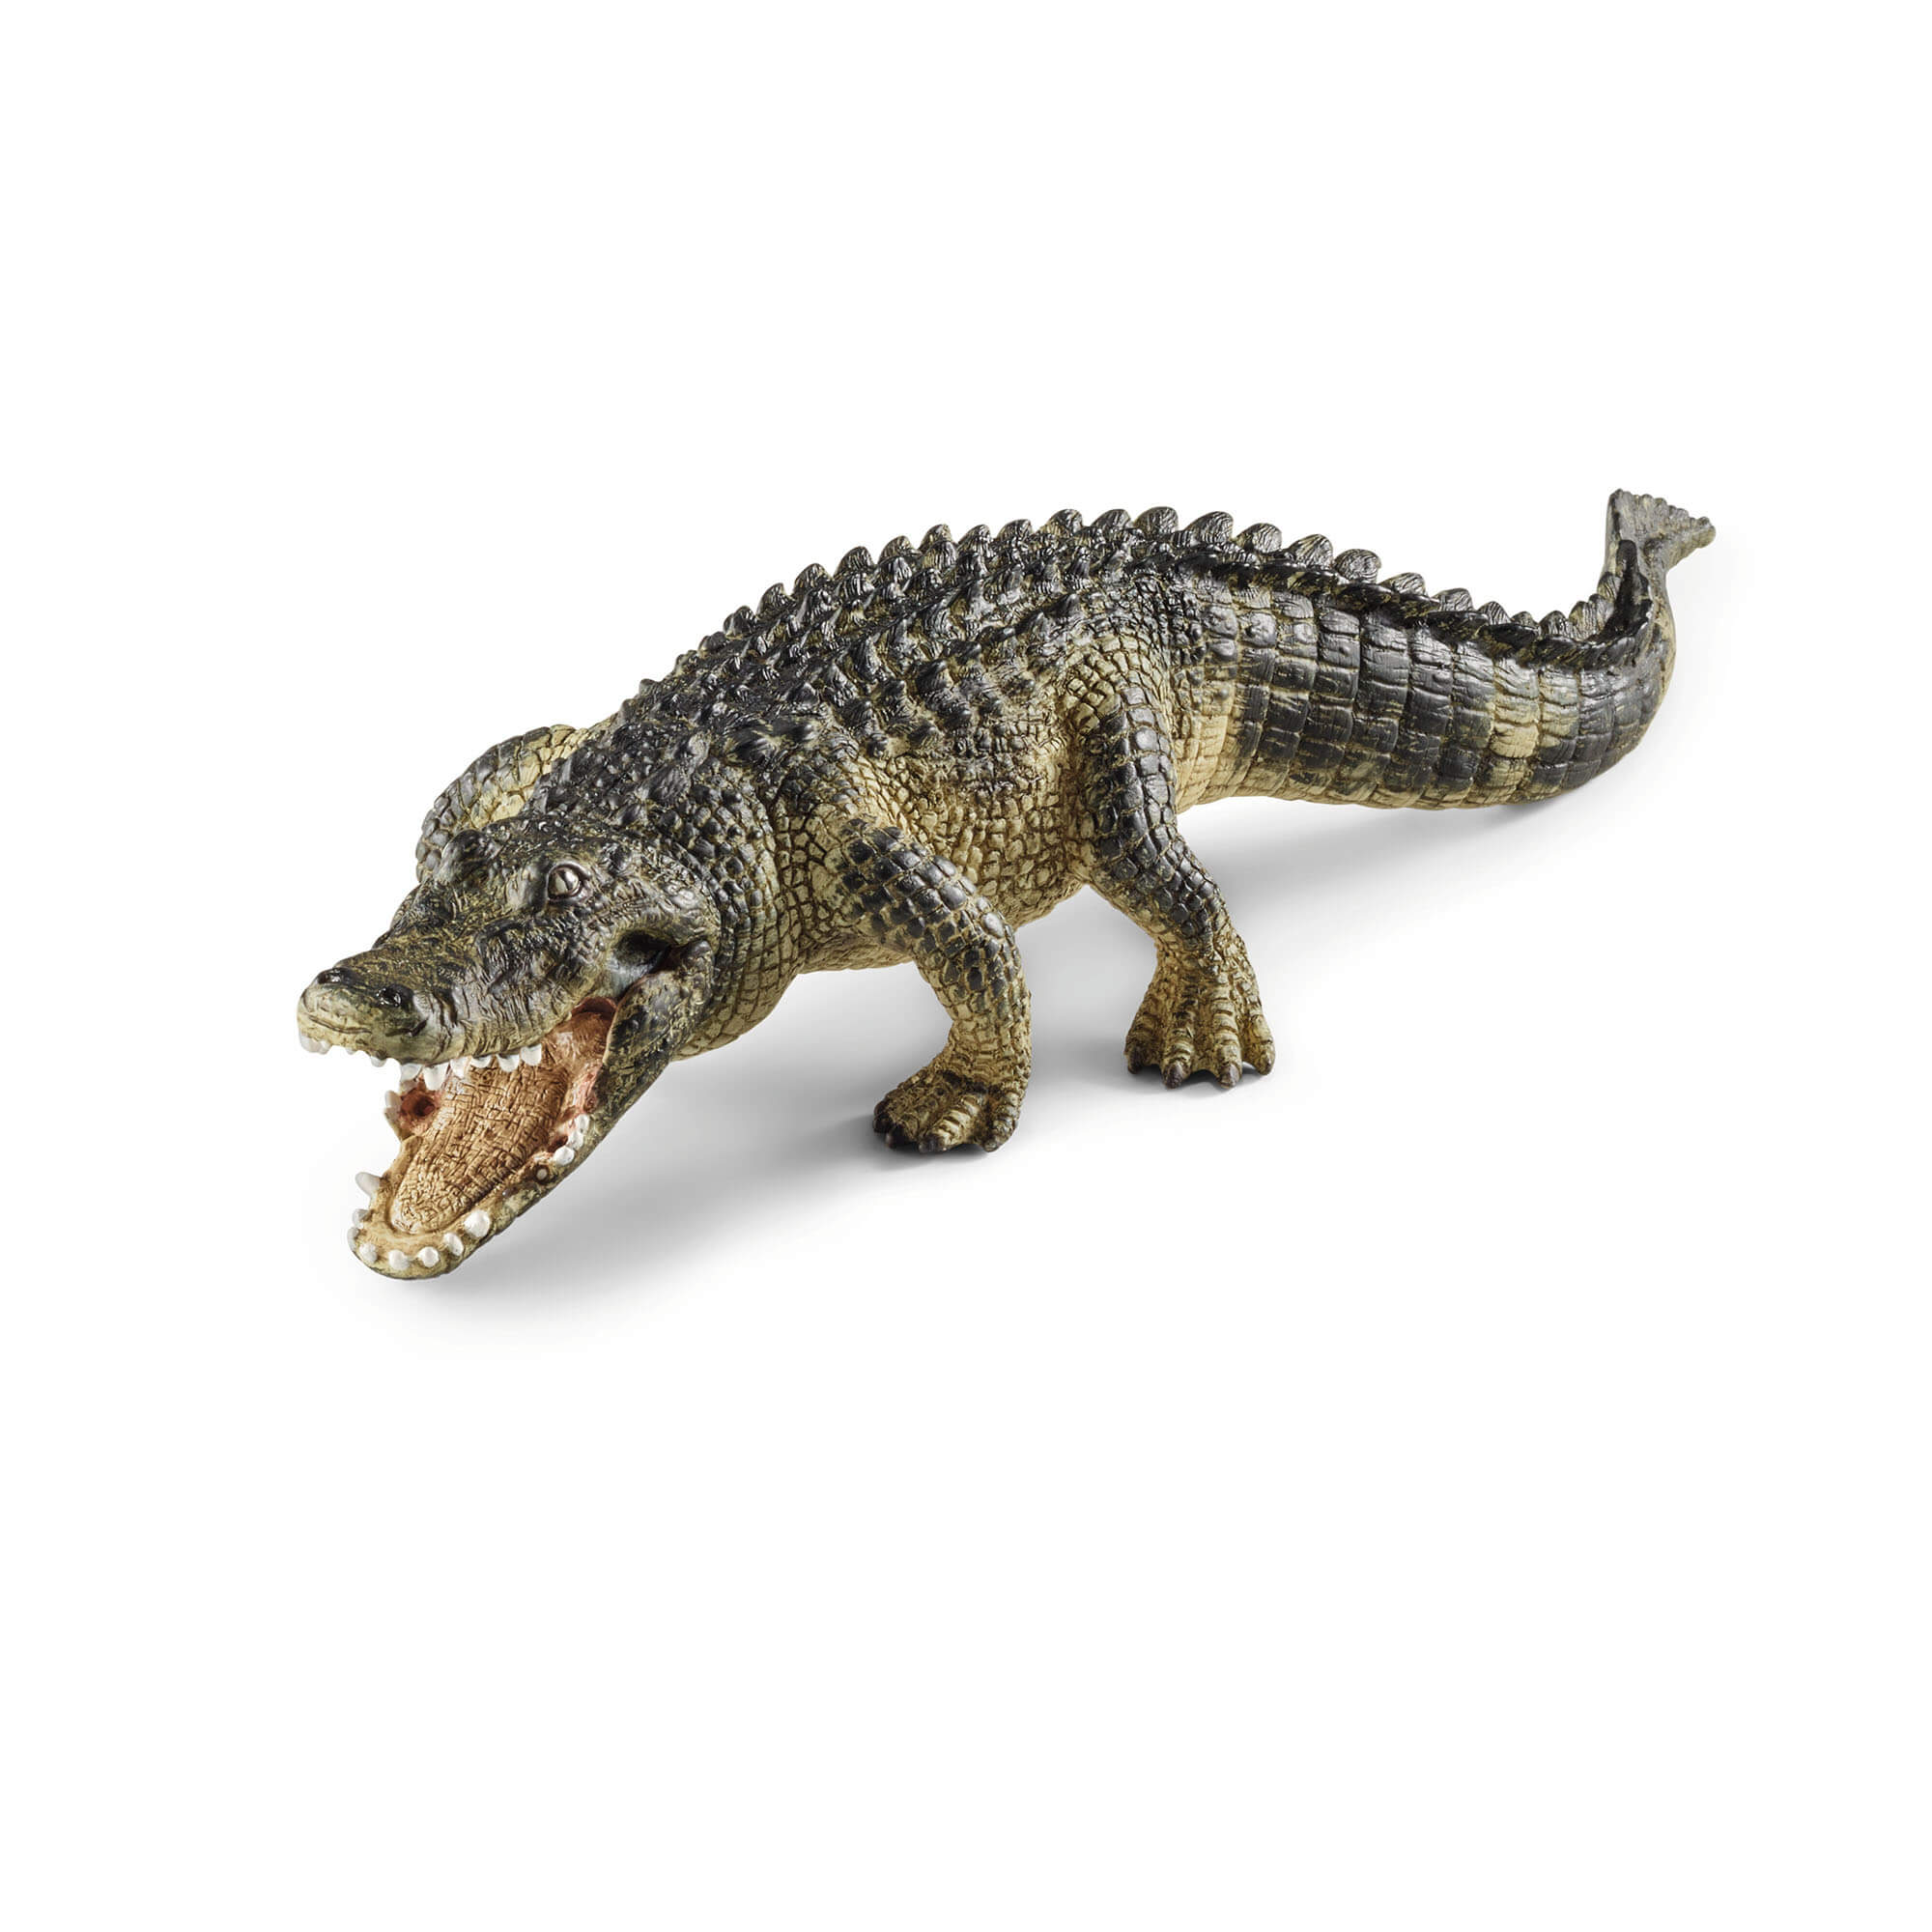 Schleich Wild Life Alligator Animal Figure